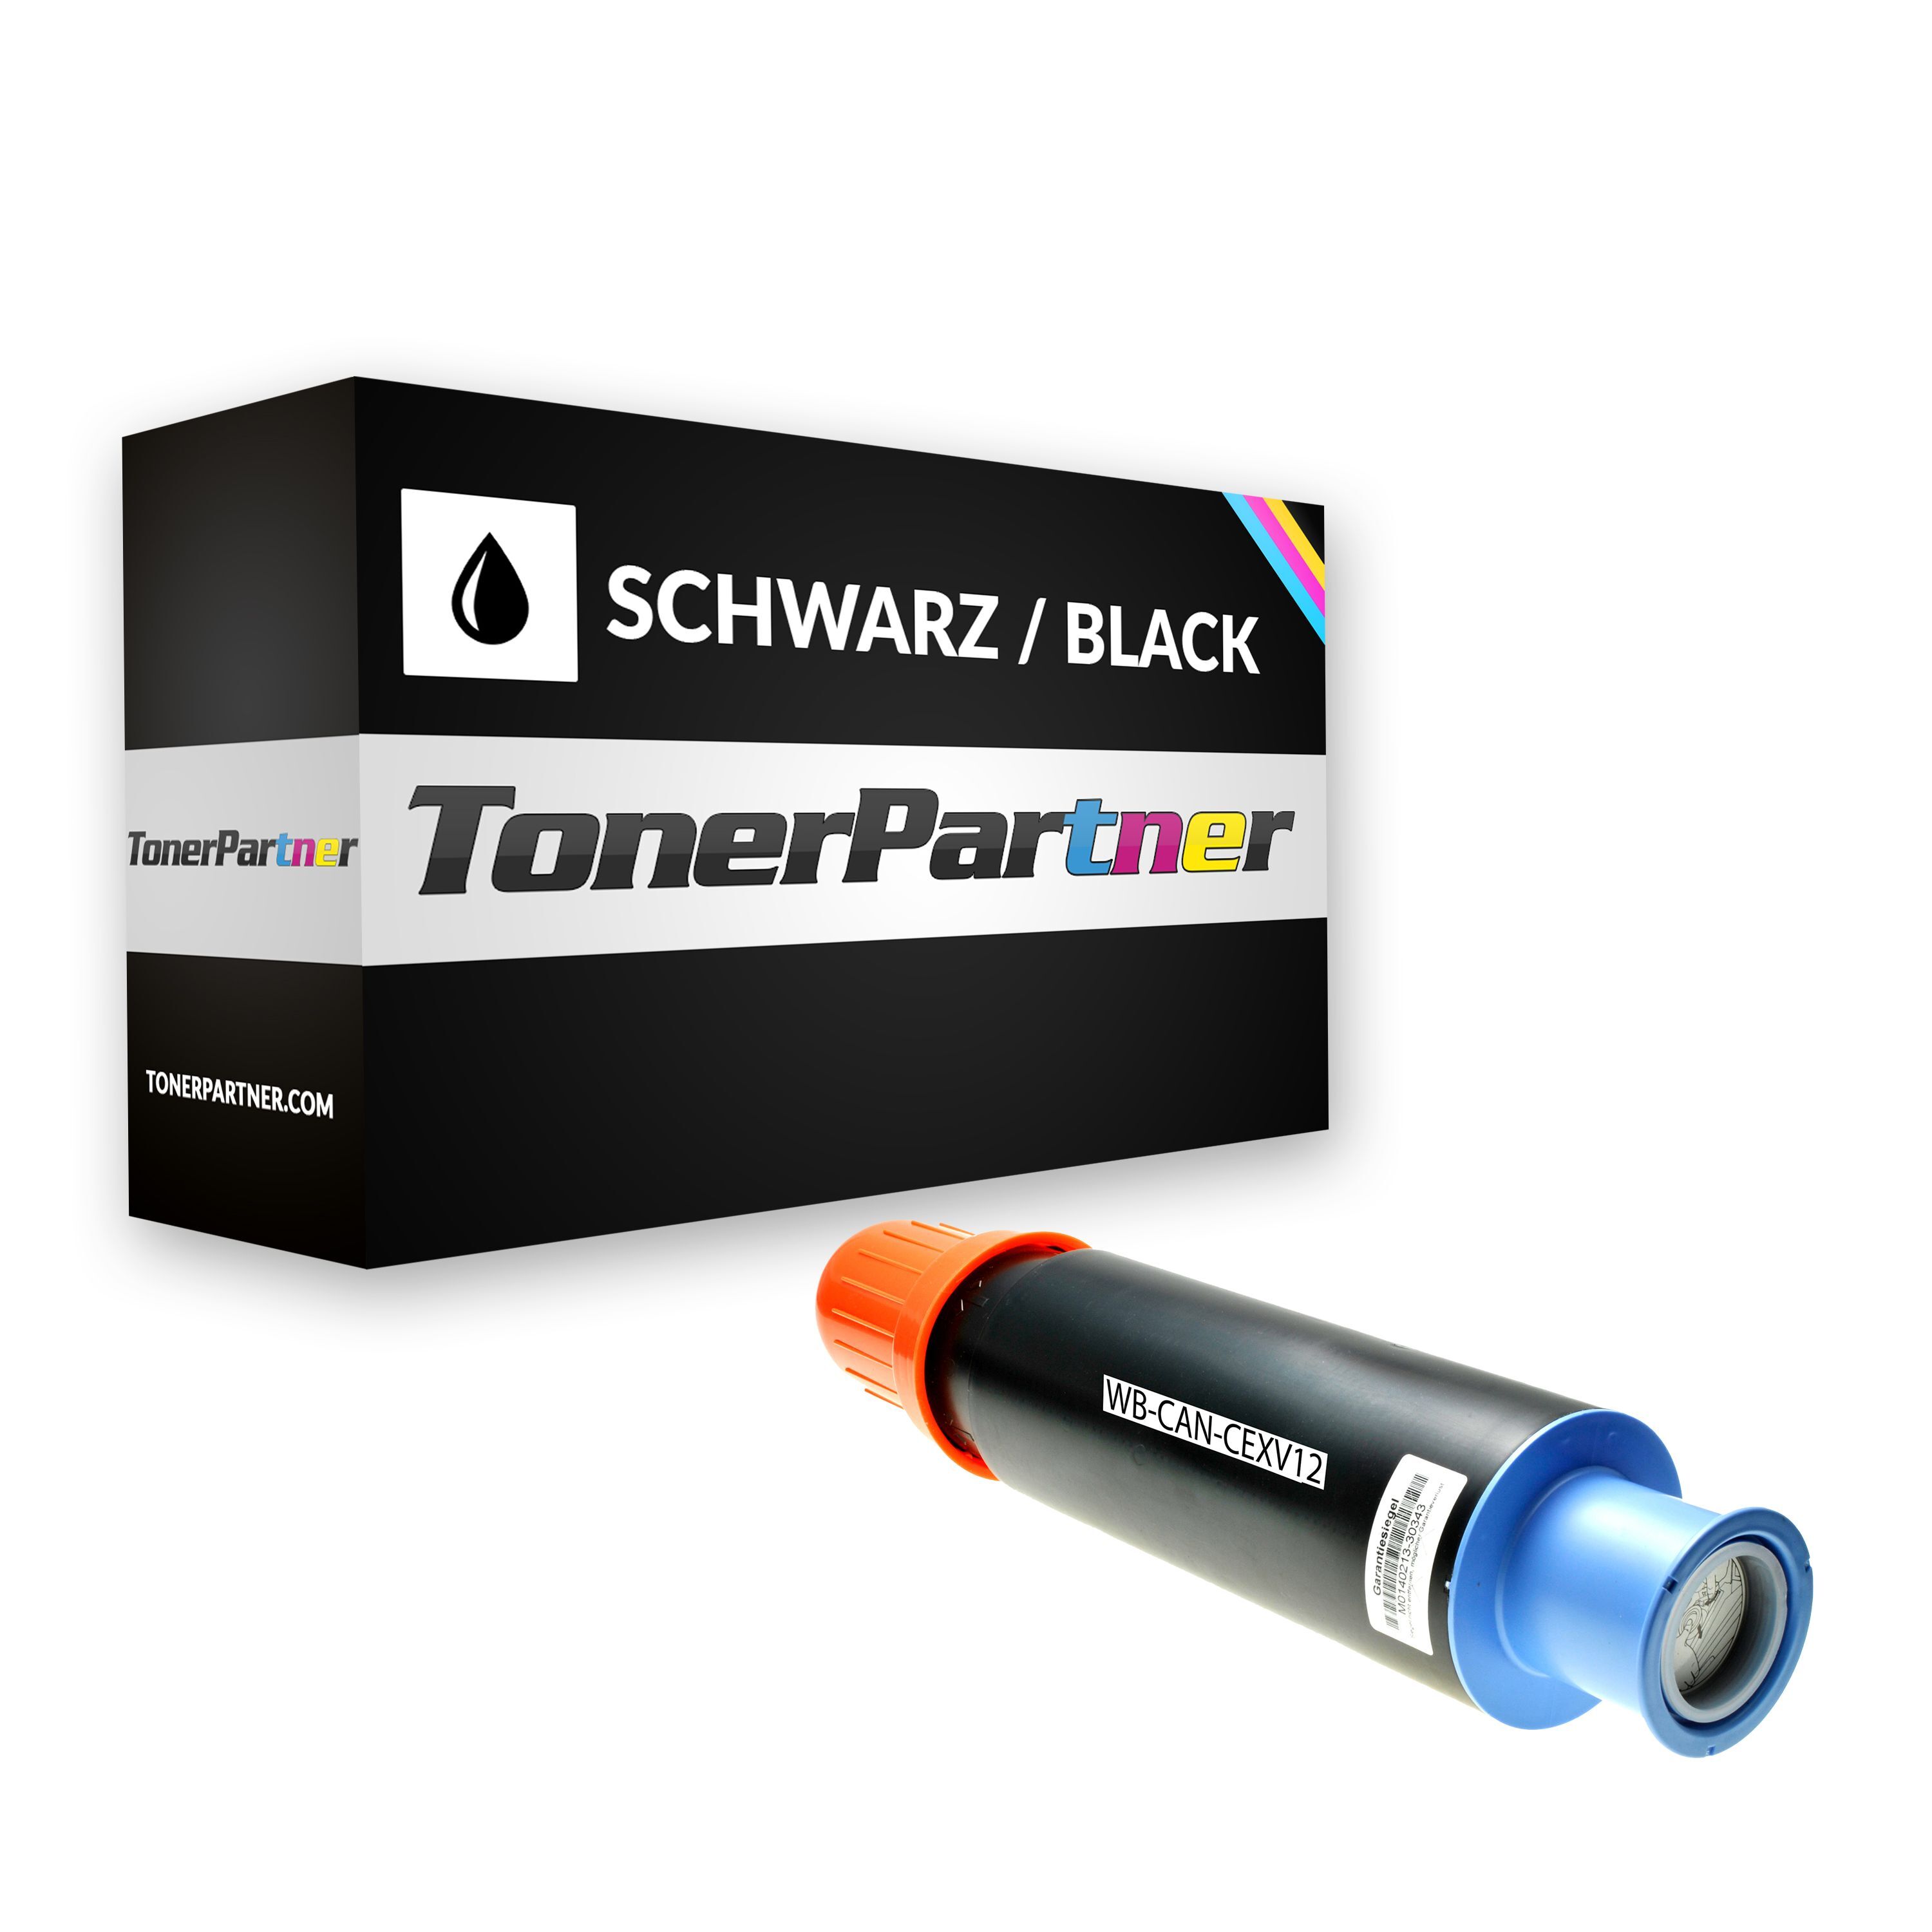 TonerPartner Kompatibel zu Canon imageRUNNER 4570 Toner (C-EXV 12 / 9634 A 002) schwarz, 24.000 Seiten, 0,16 Rp pro Seite, Inhalt: 1.220 g von TonerPartner